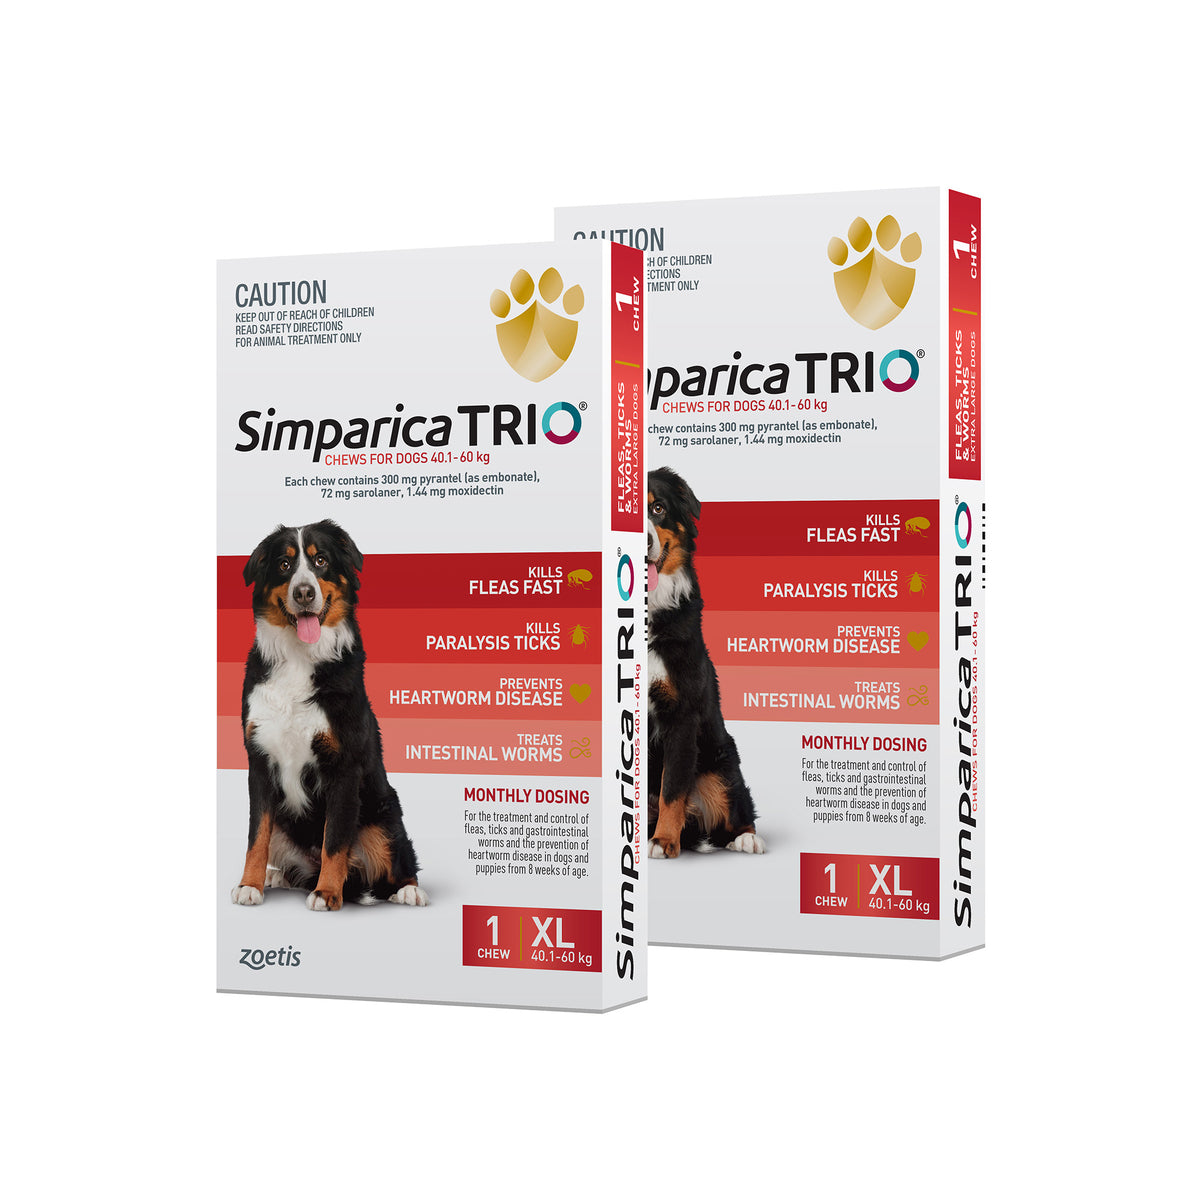 Promo 2 Free Doses - Simparica Trio Extra Large Dog